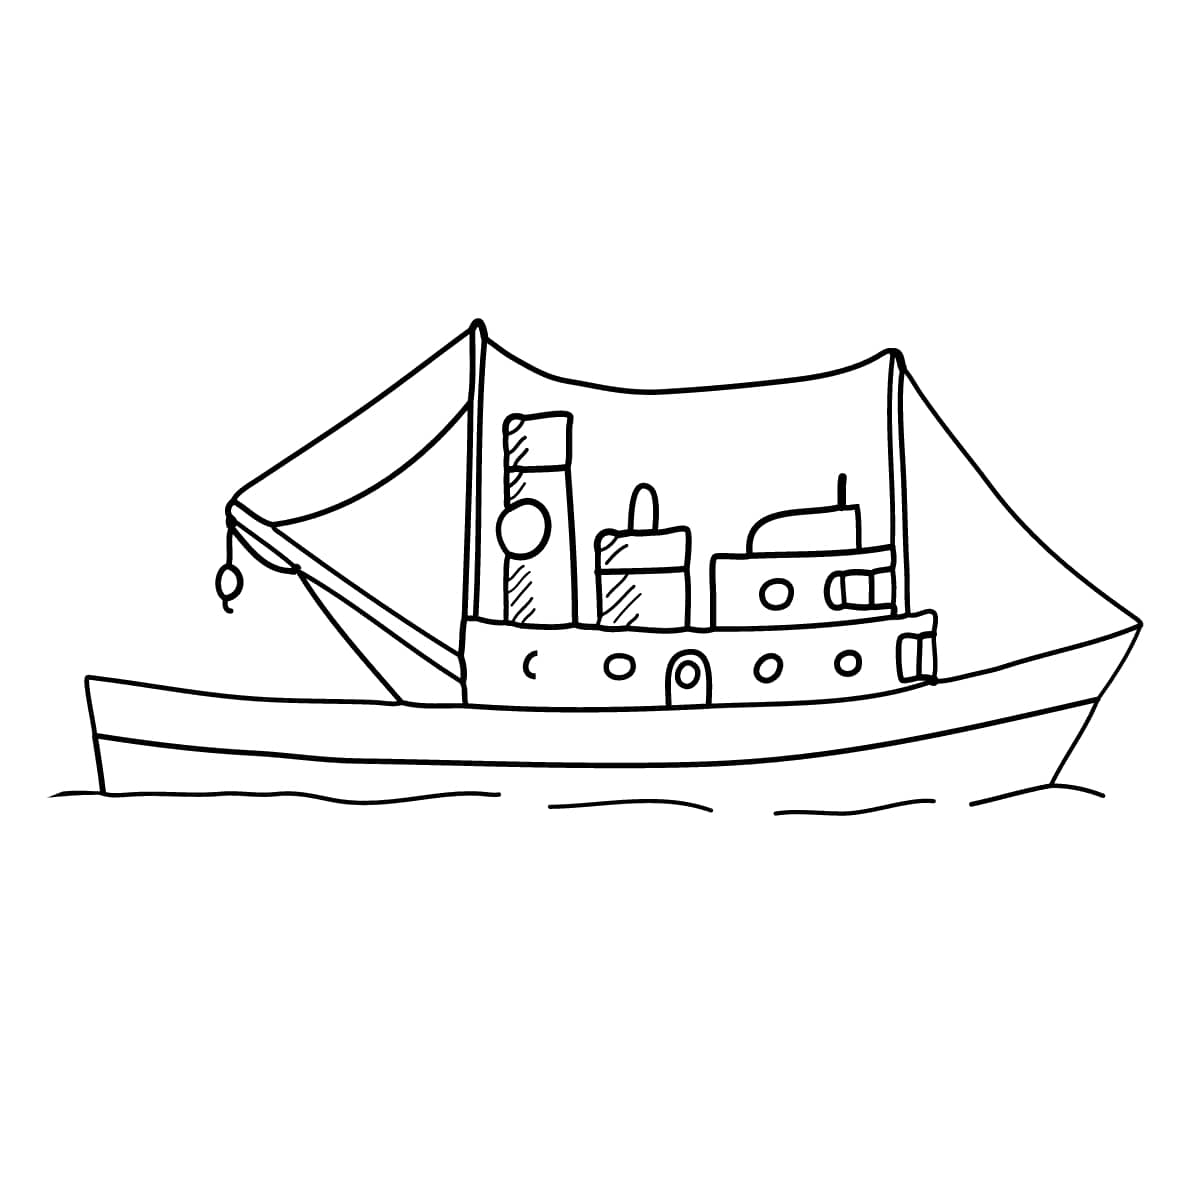 Vẽ thuyền buồm đơn giản và tô màu cho bé | Dạy bé tô màu | Dạy bé vẽ |  Mewarnai Perahu layar - YouTube